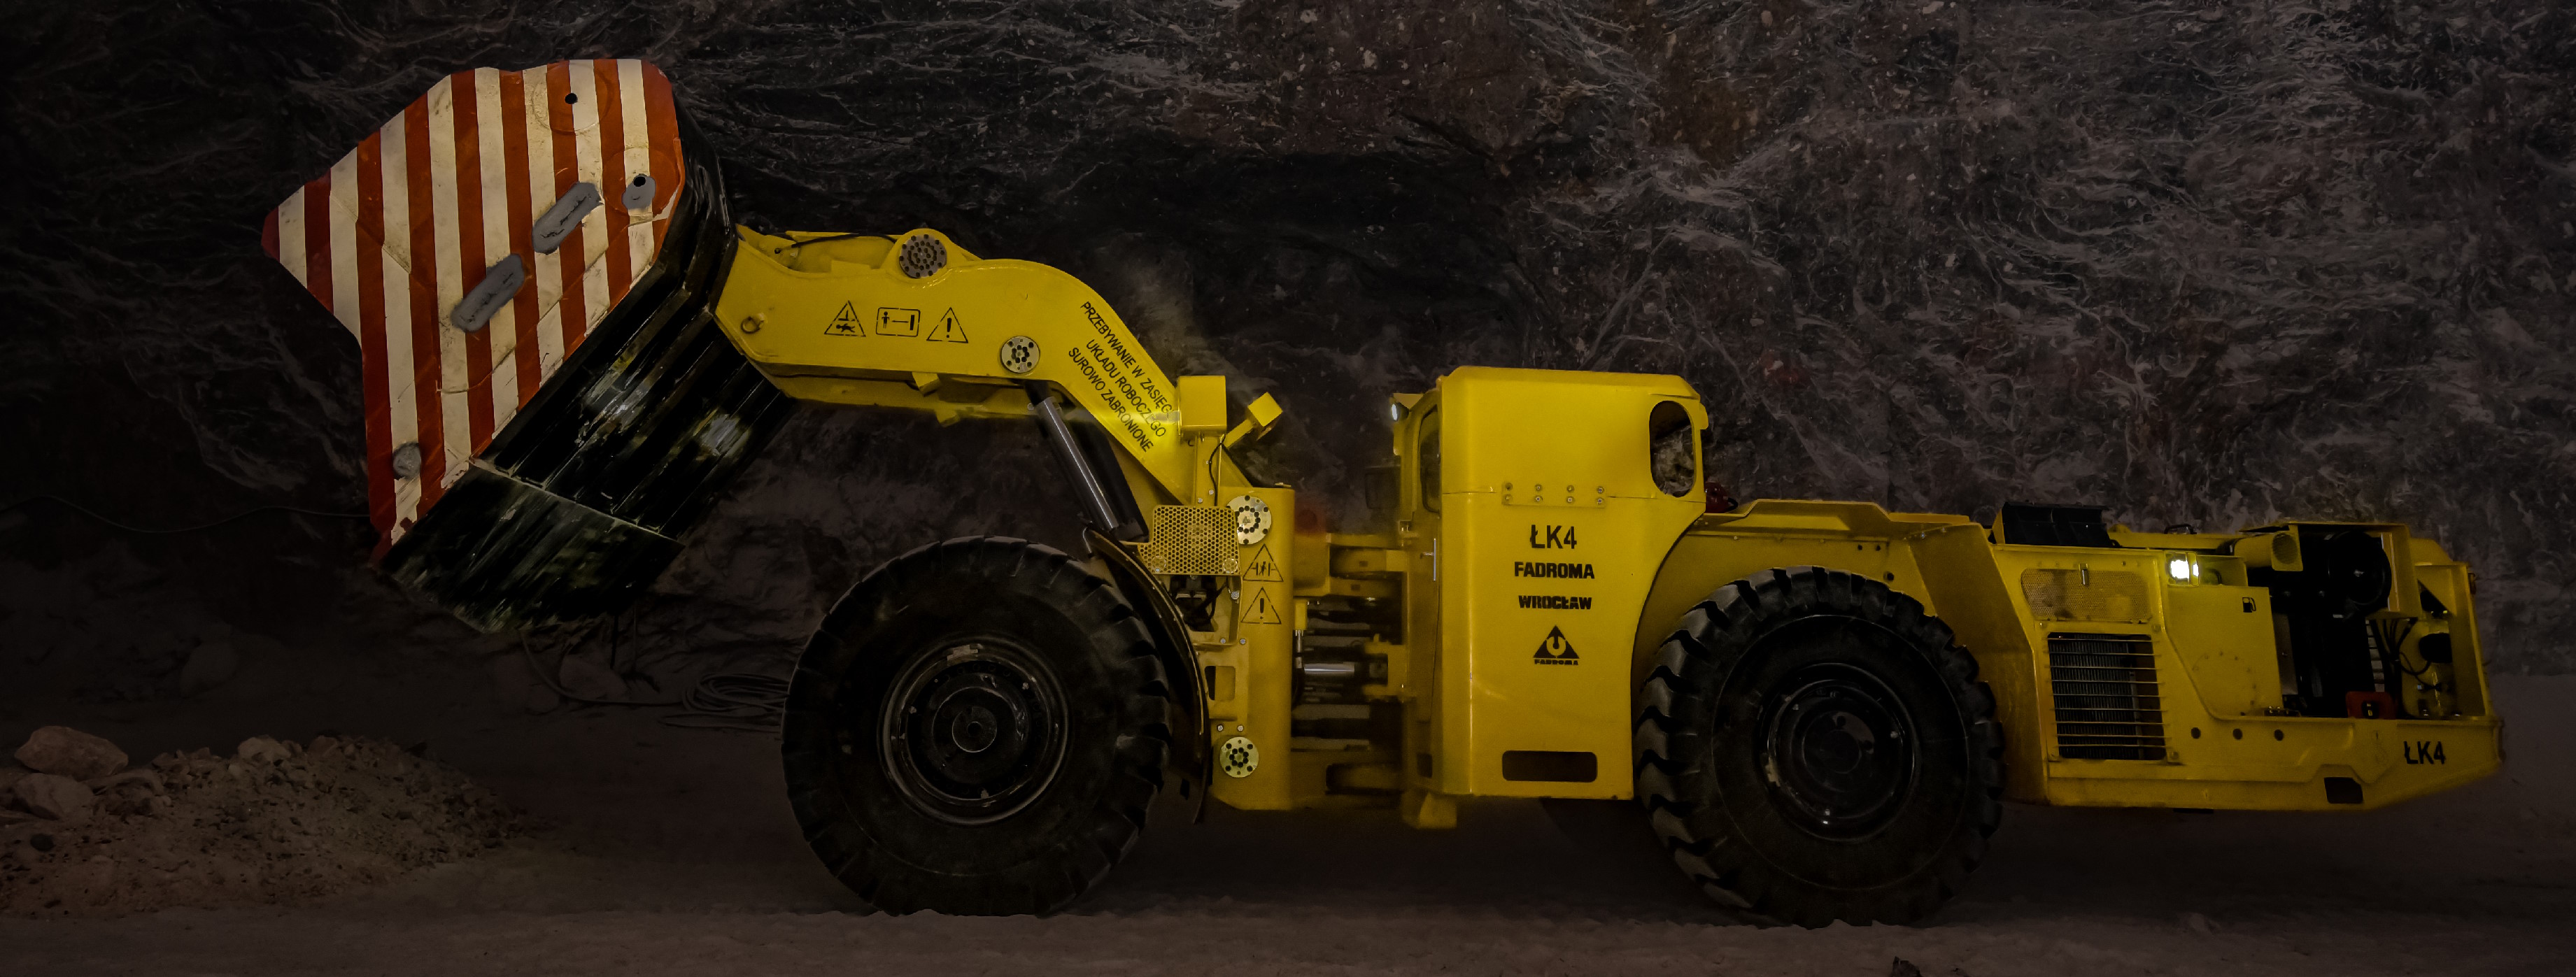 LK4 loader in an underground mine